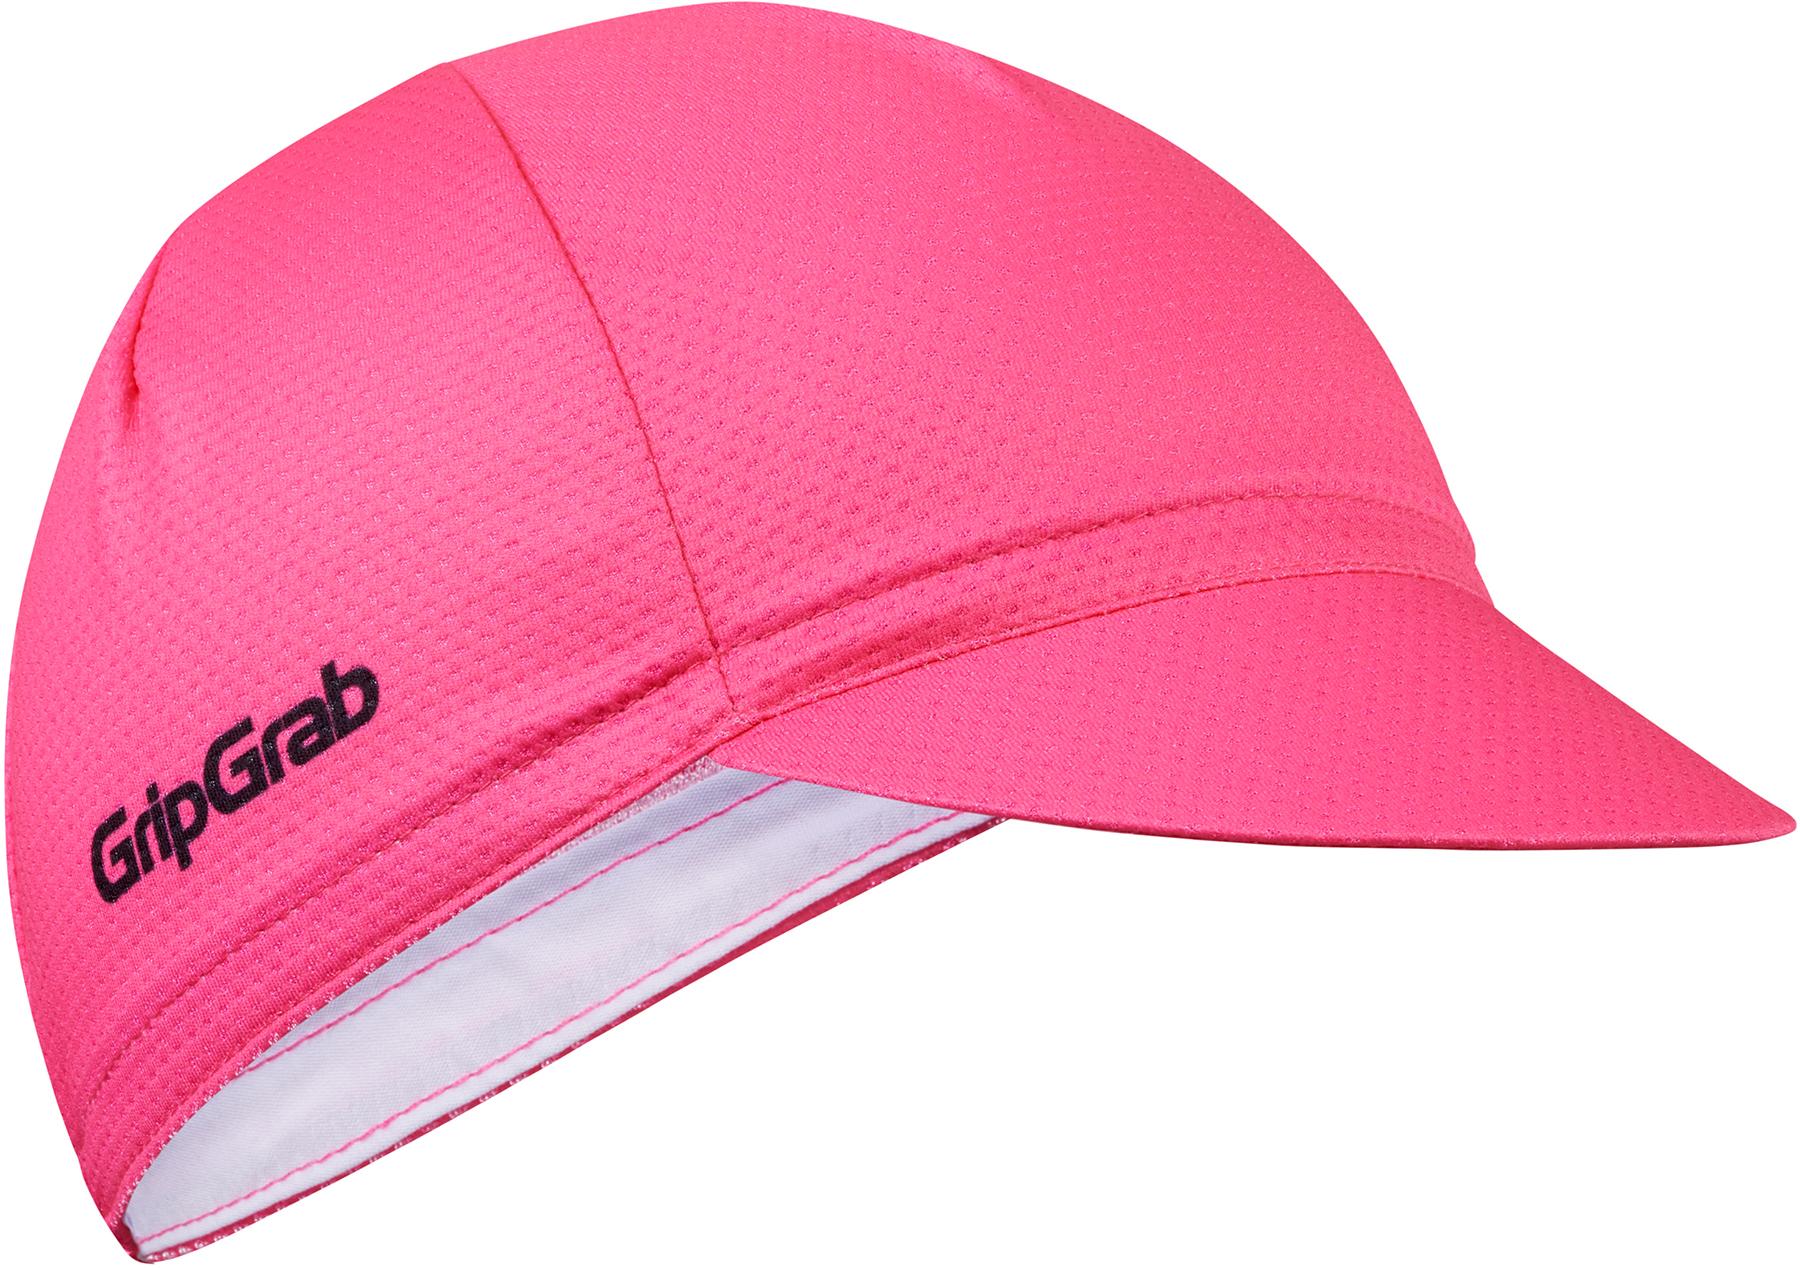 Gripgrab Lightweight Summer Cycling Cap  Pink